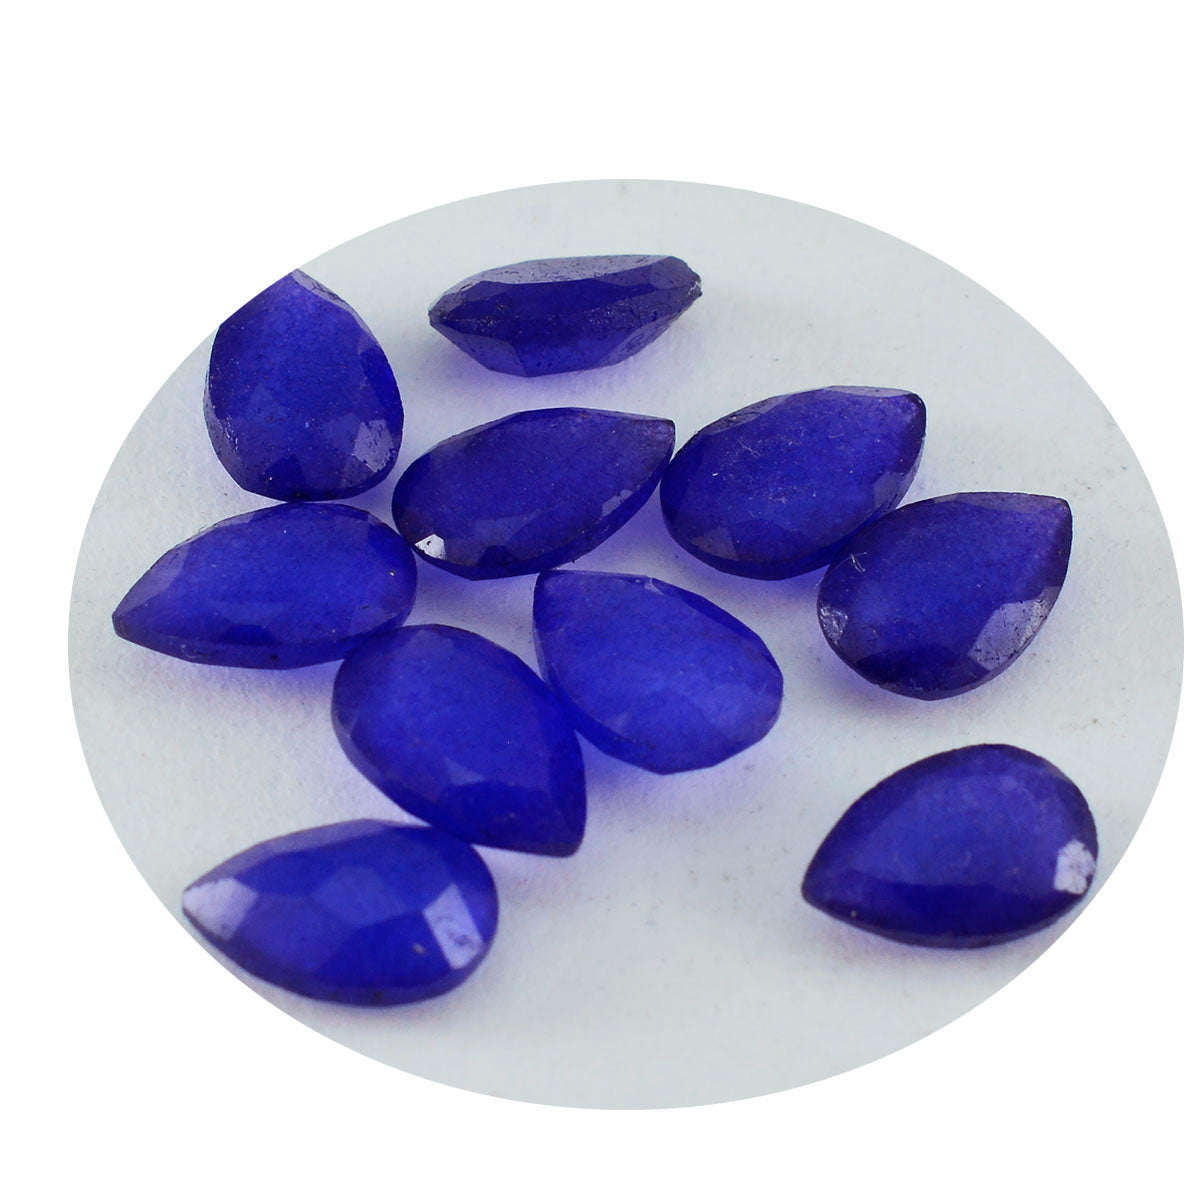 riyogems 1 шт. натуральная синяя яшма граненая 4x6 мм грушевидная форма драгоценный камень удивительного качества